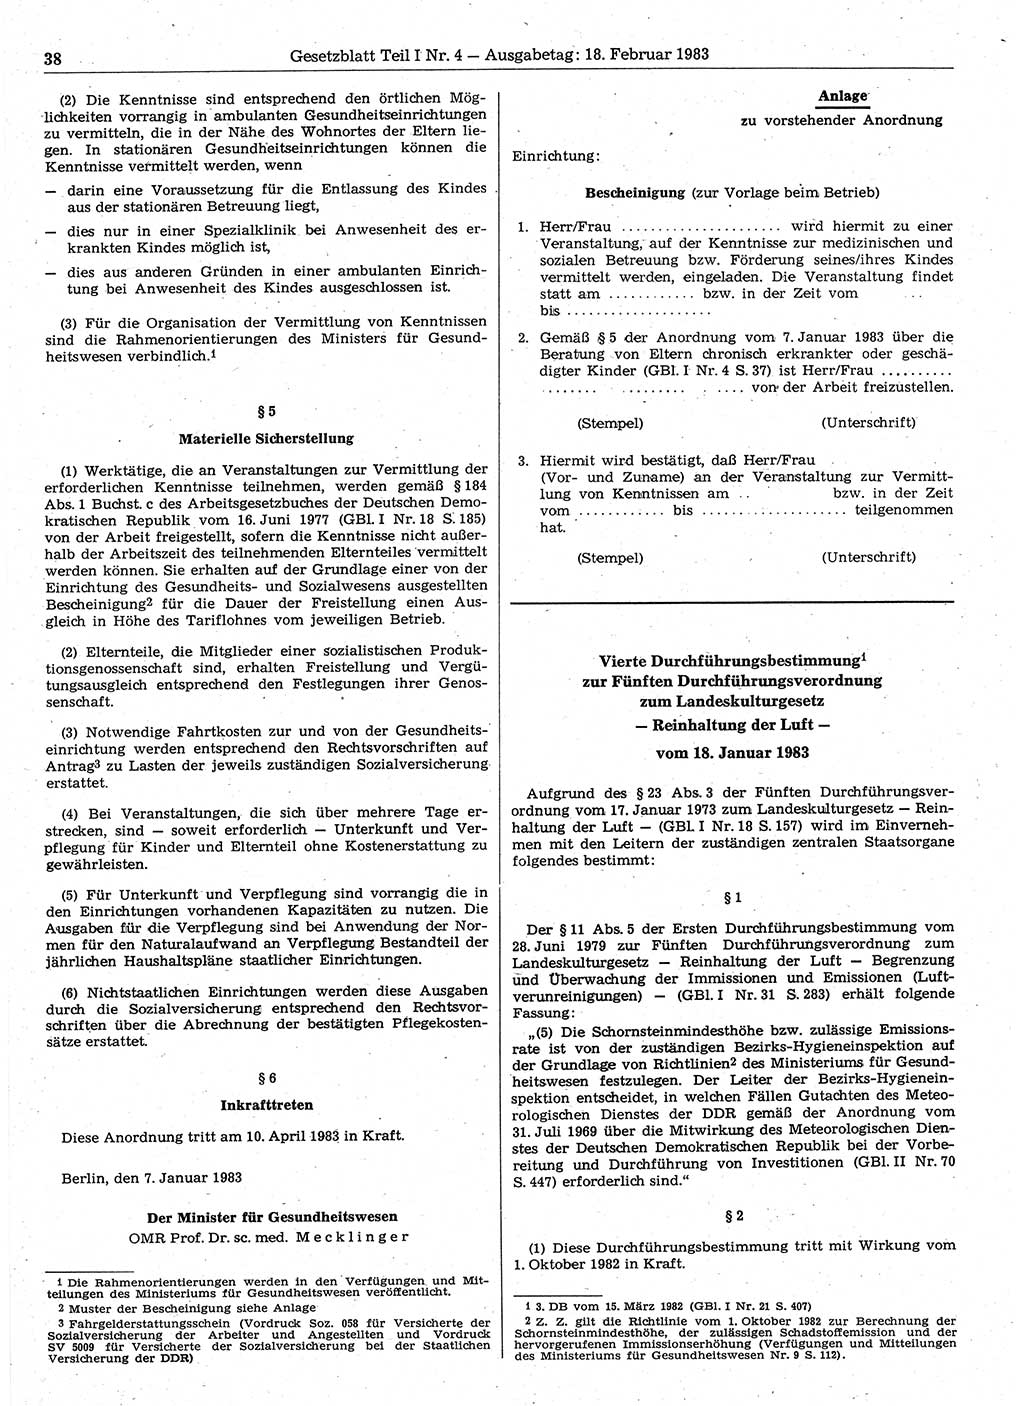 Gesetzblatt (GBl.) der Deutschen Demokratischen Republik (DDR) Teil Ⅰ 1983, Seite 38 (GBl. DDR Ⅰ 1983, S. 38)